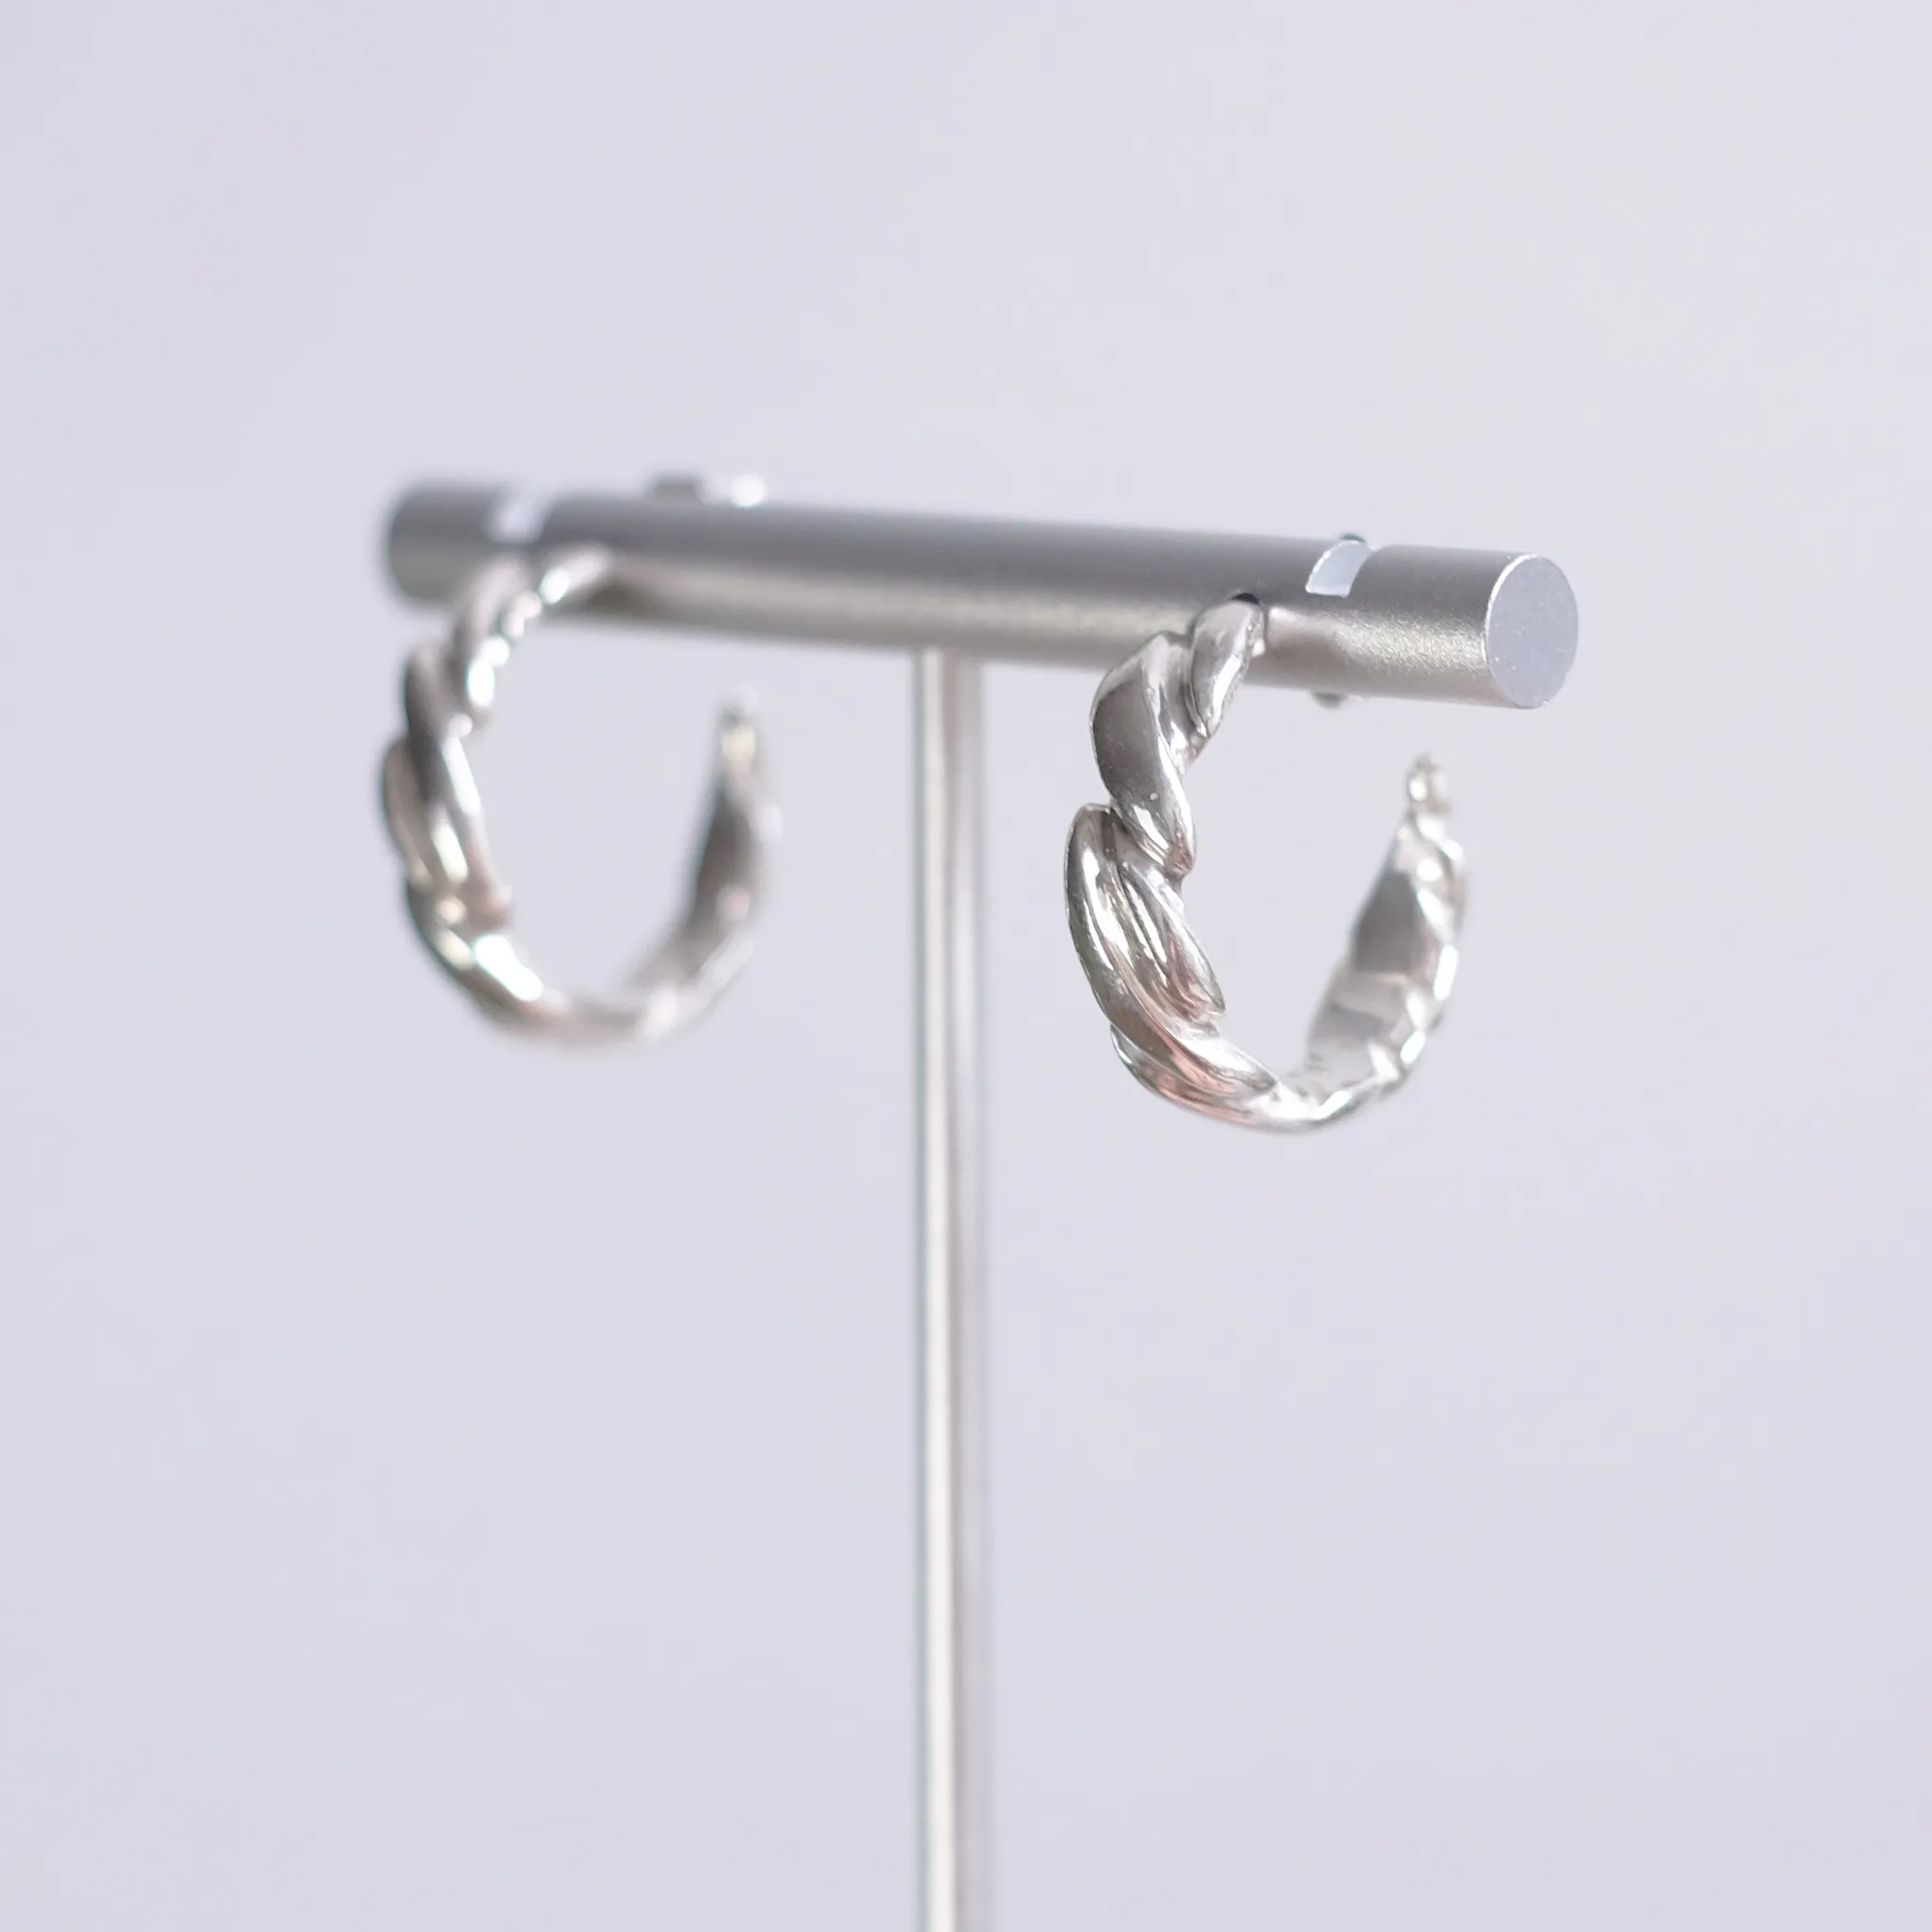 Twist hoop earrings